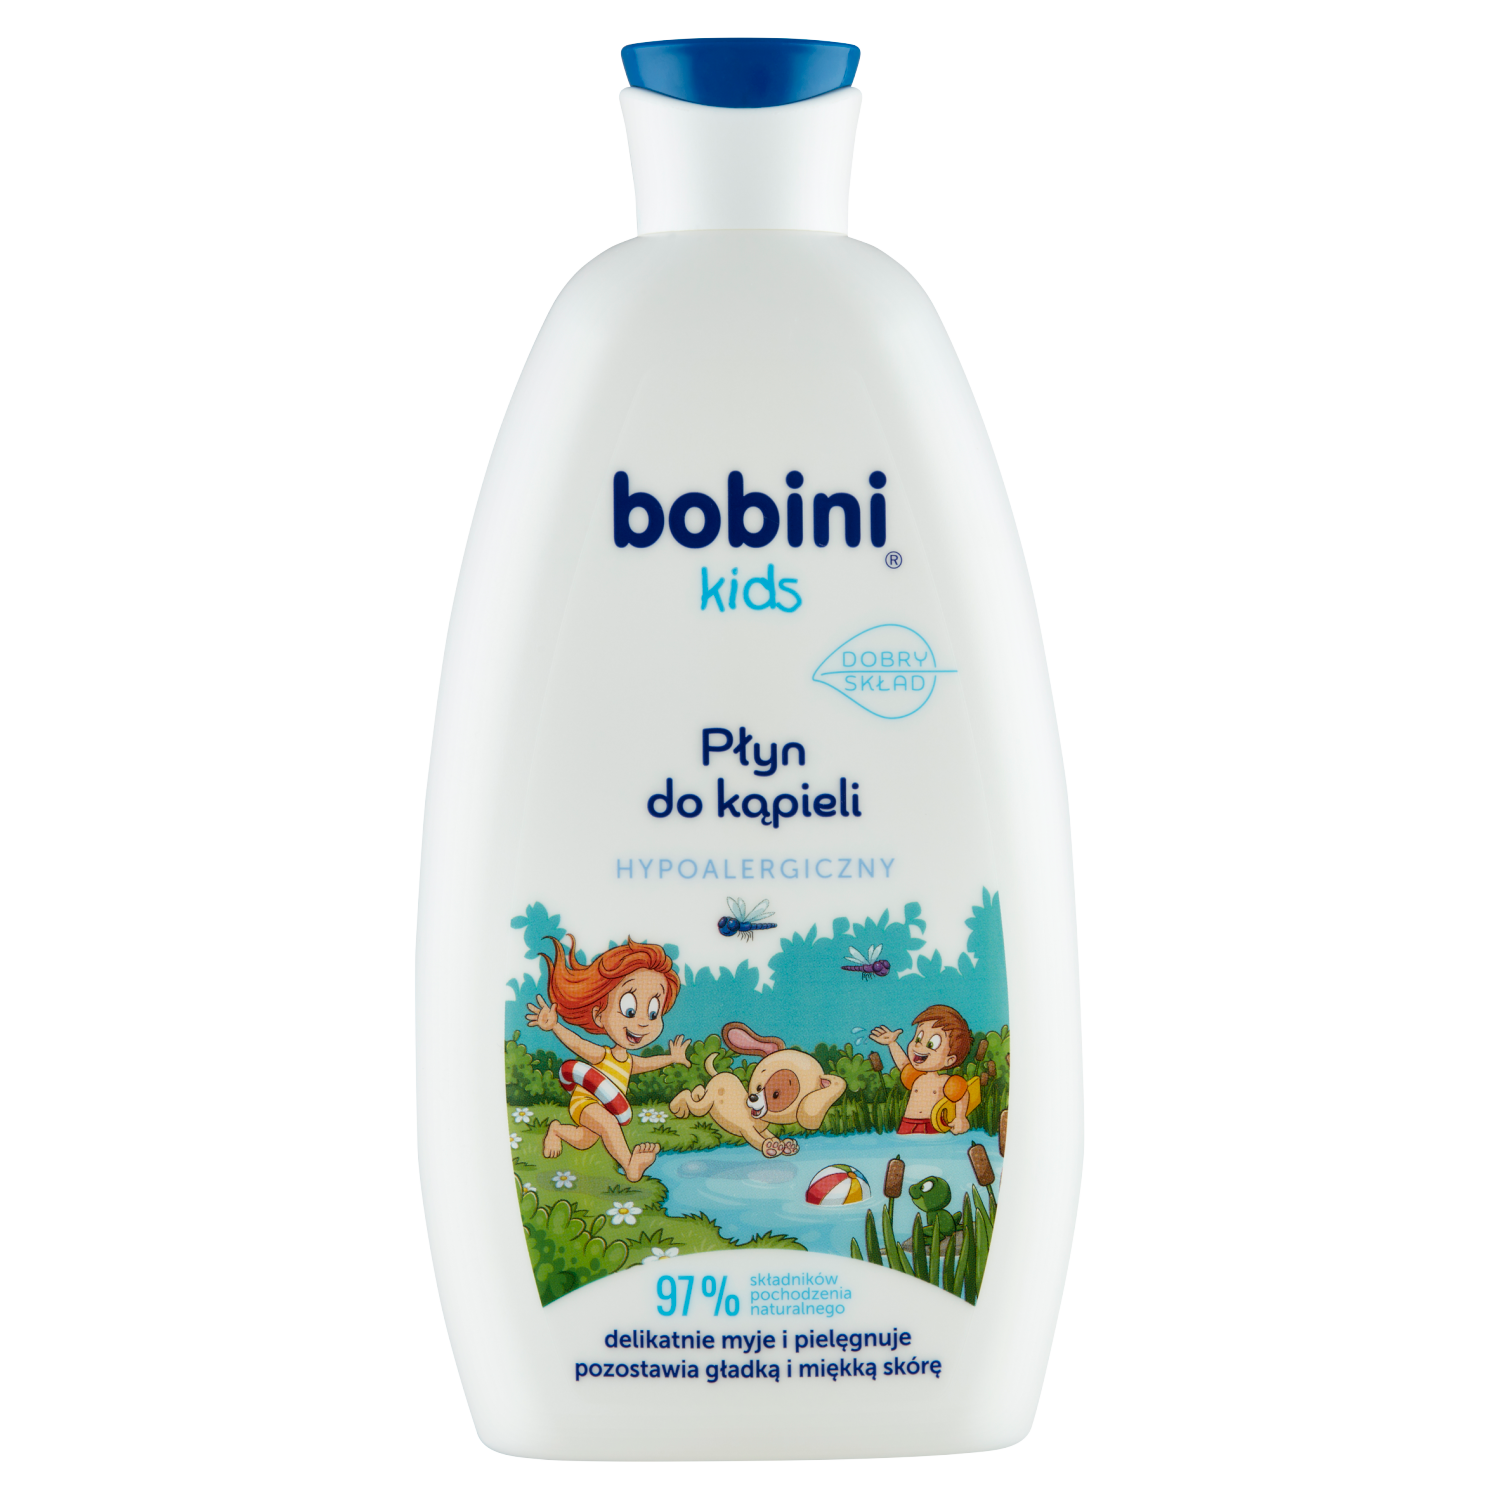 Bobini Kids жемчужная ванна для детей, 500 мл